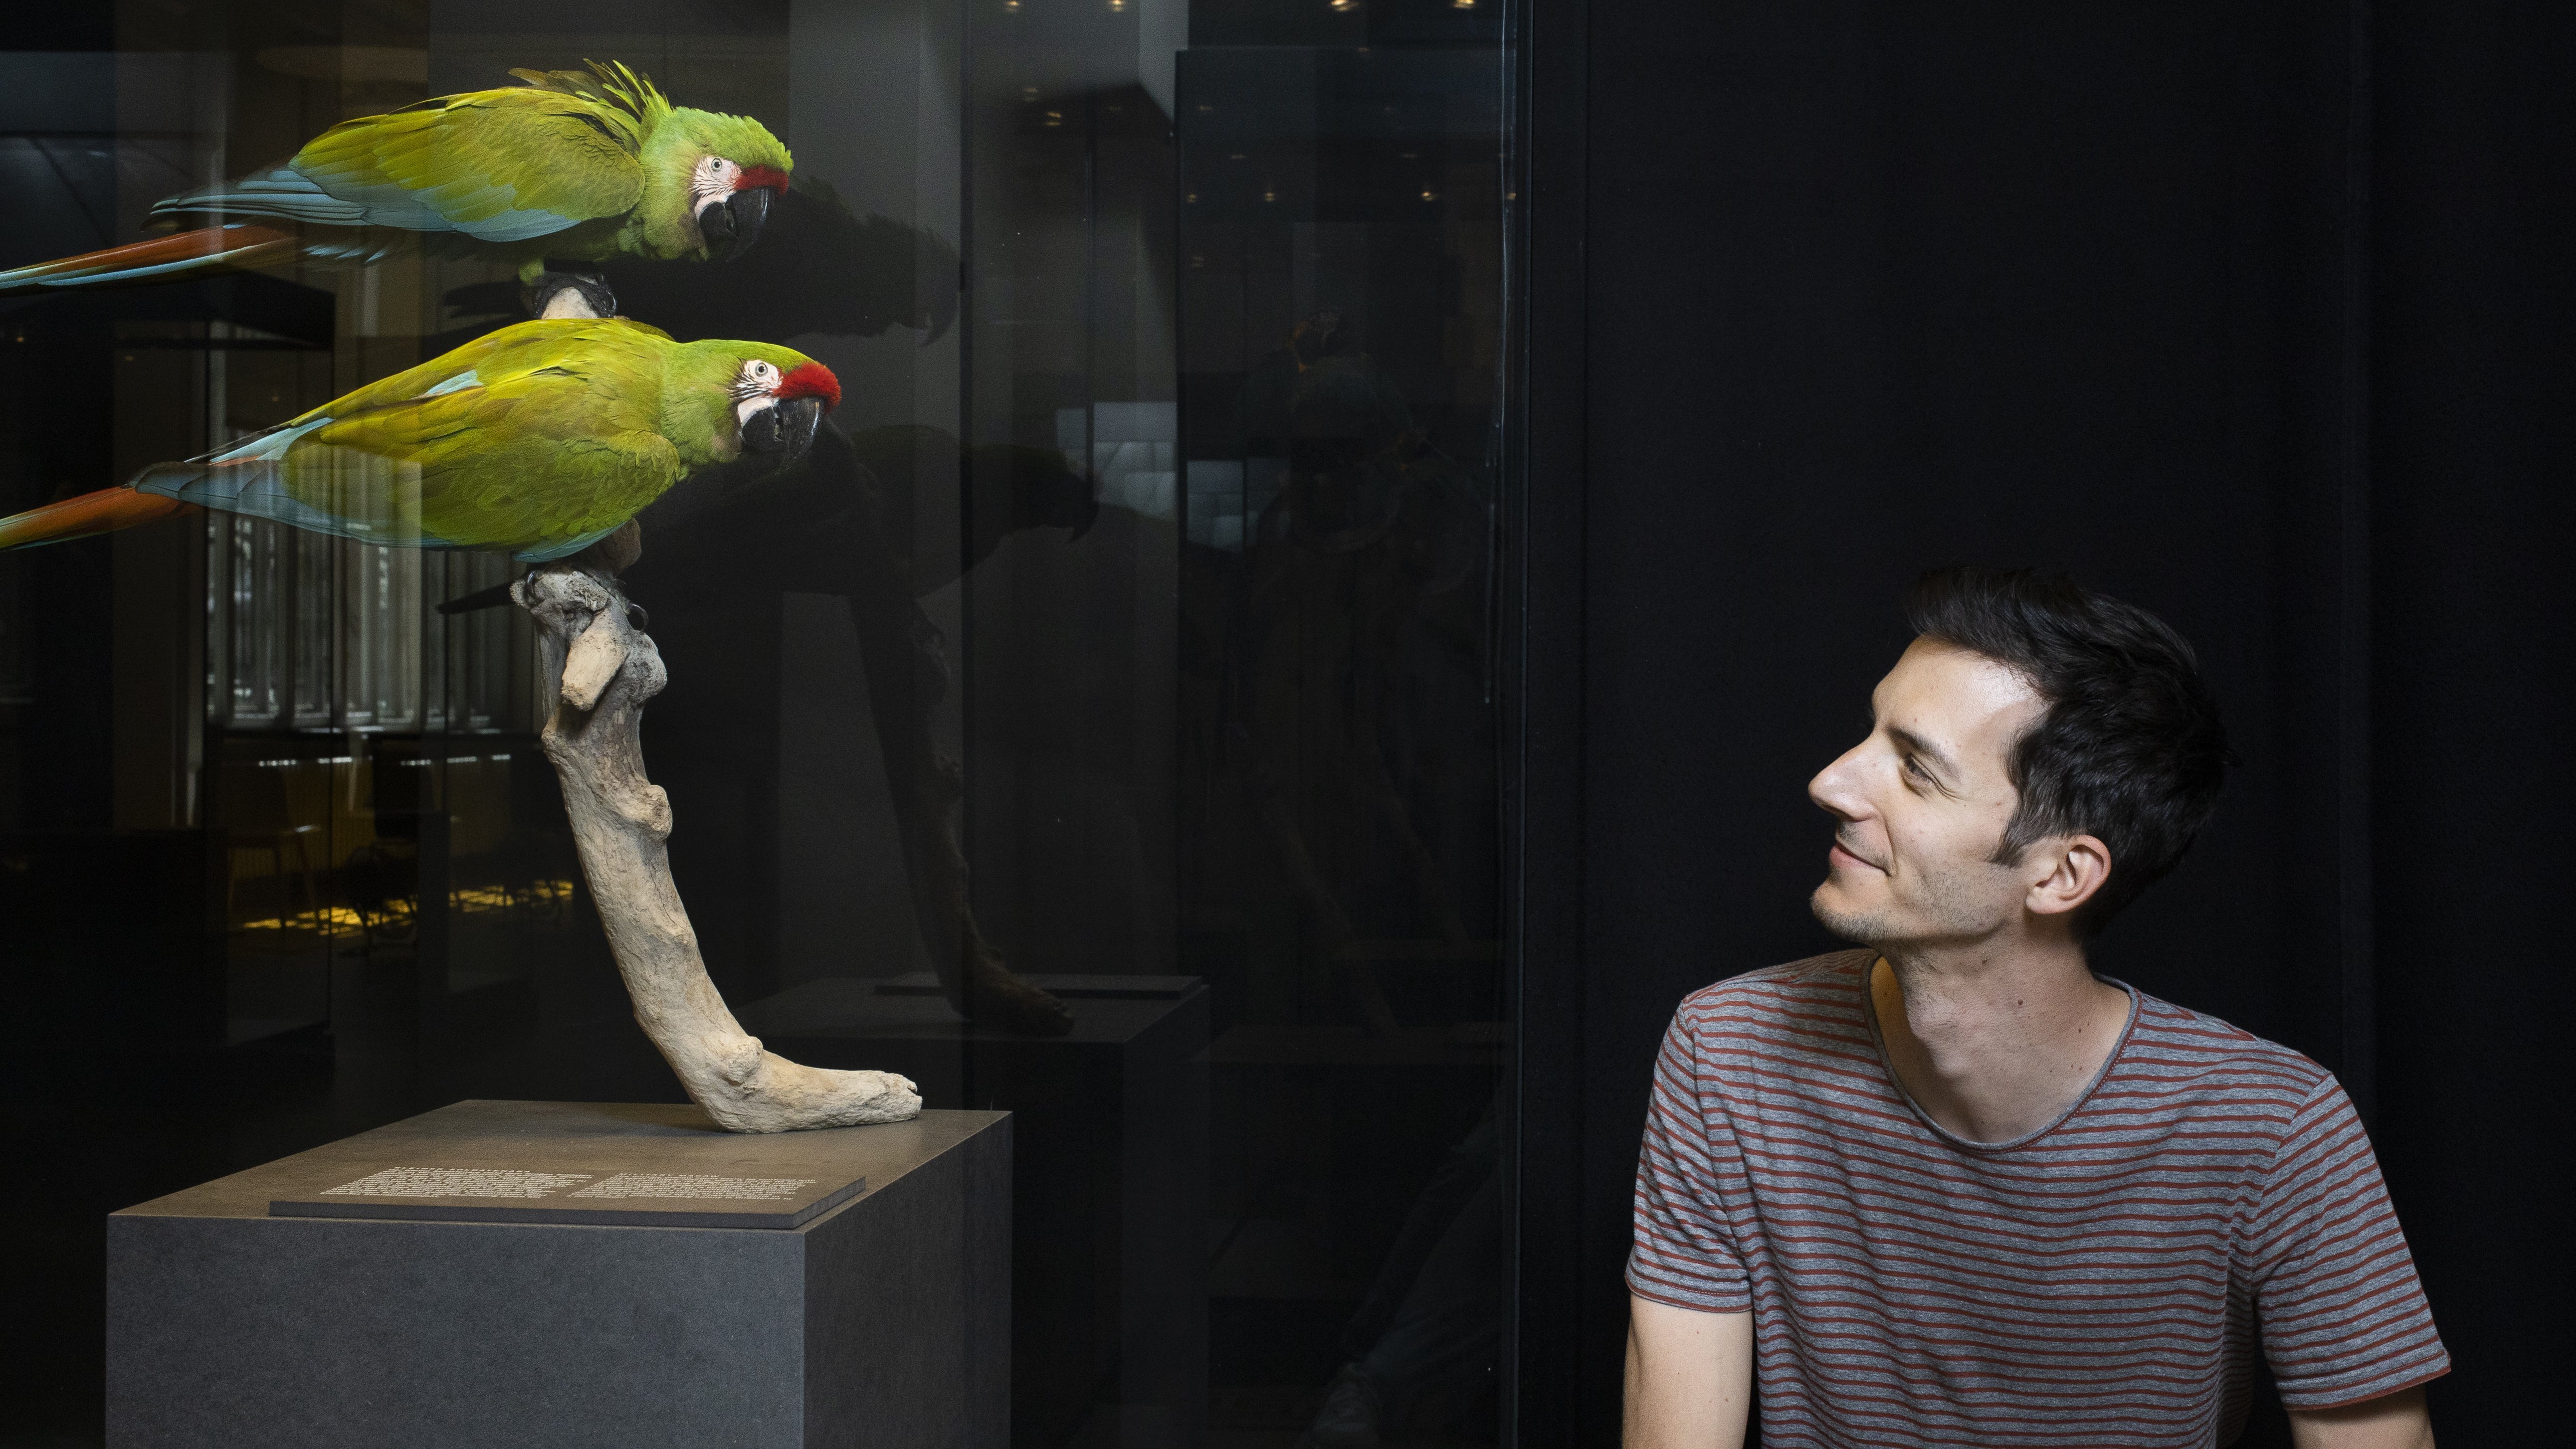 Bruno Delepelaire (rechts im Bild) neben zwei grünen Papageien (links im Bild).